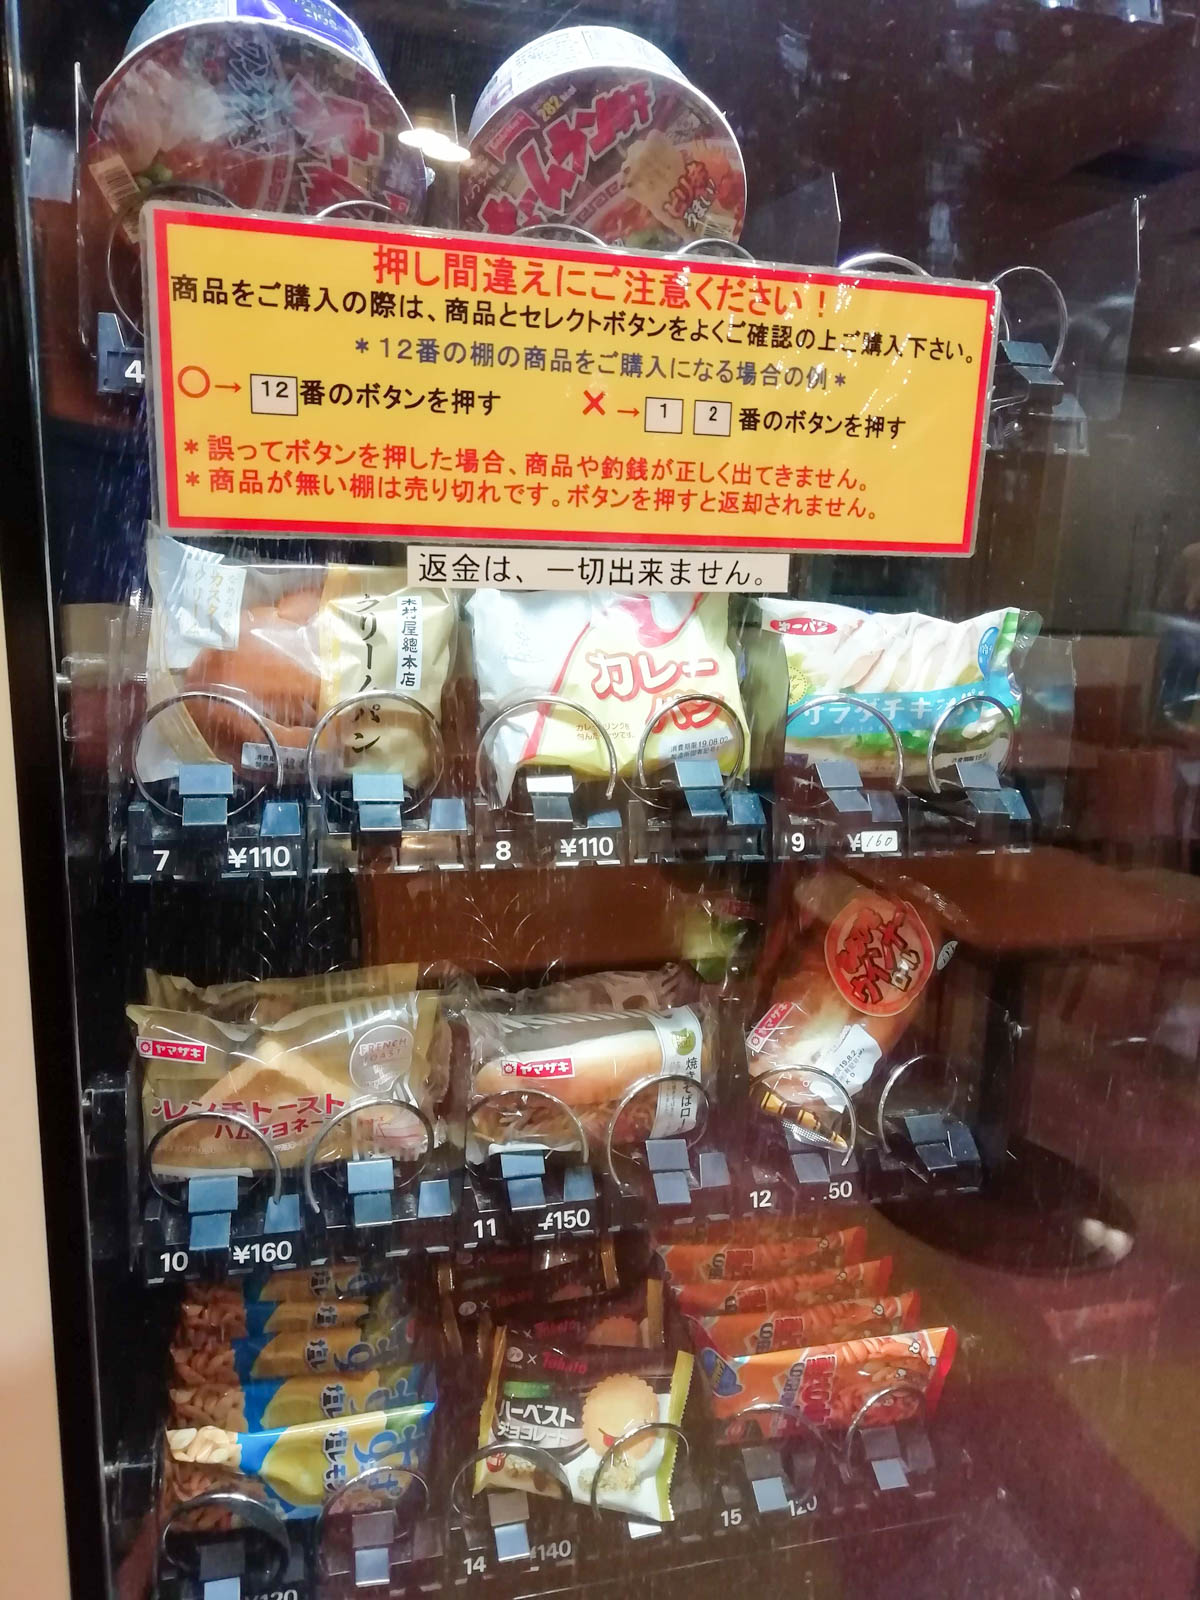 パンとカップ麺の自動販売機